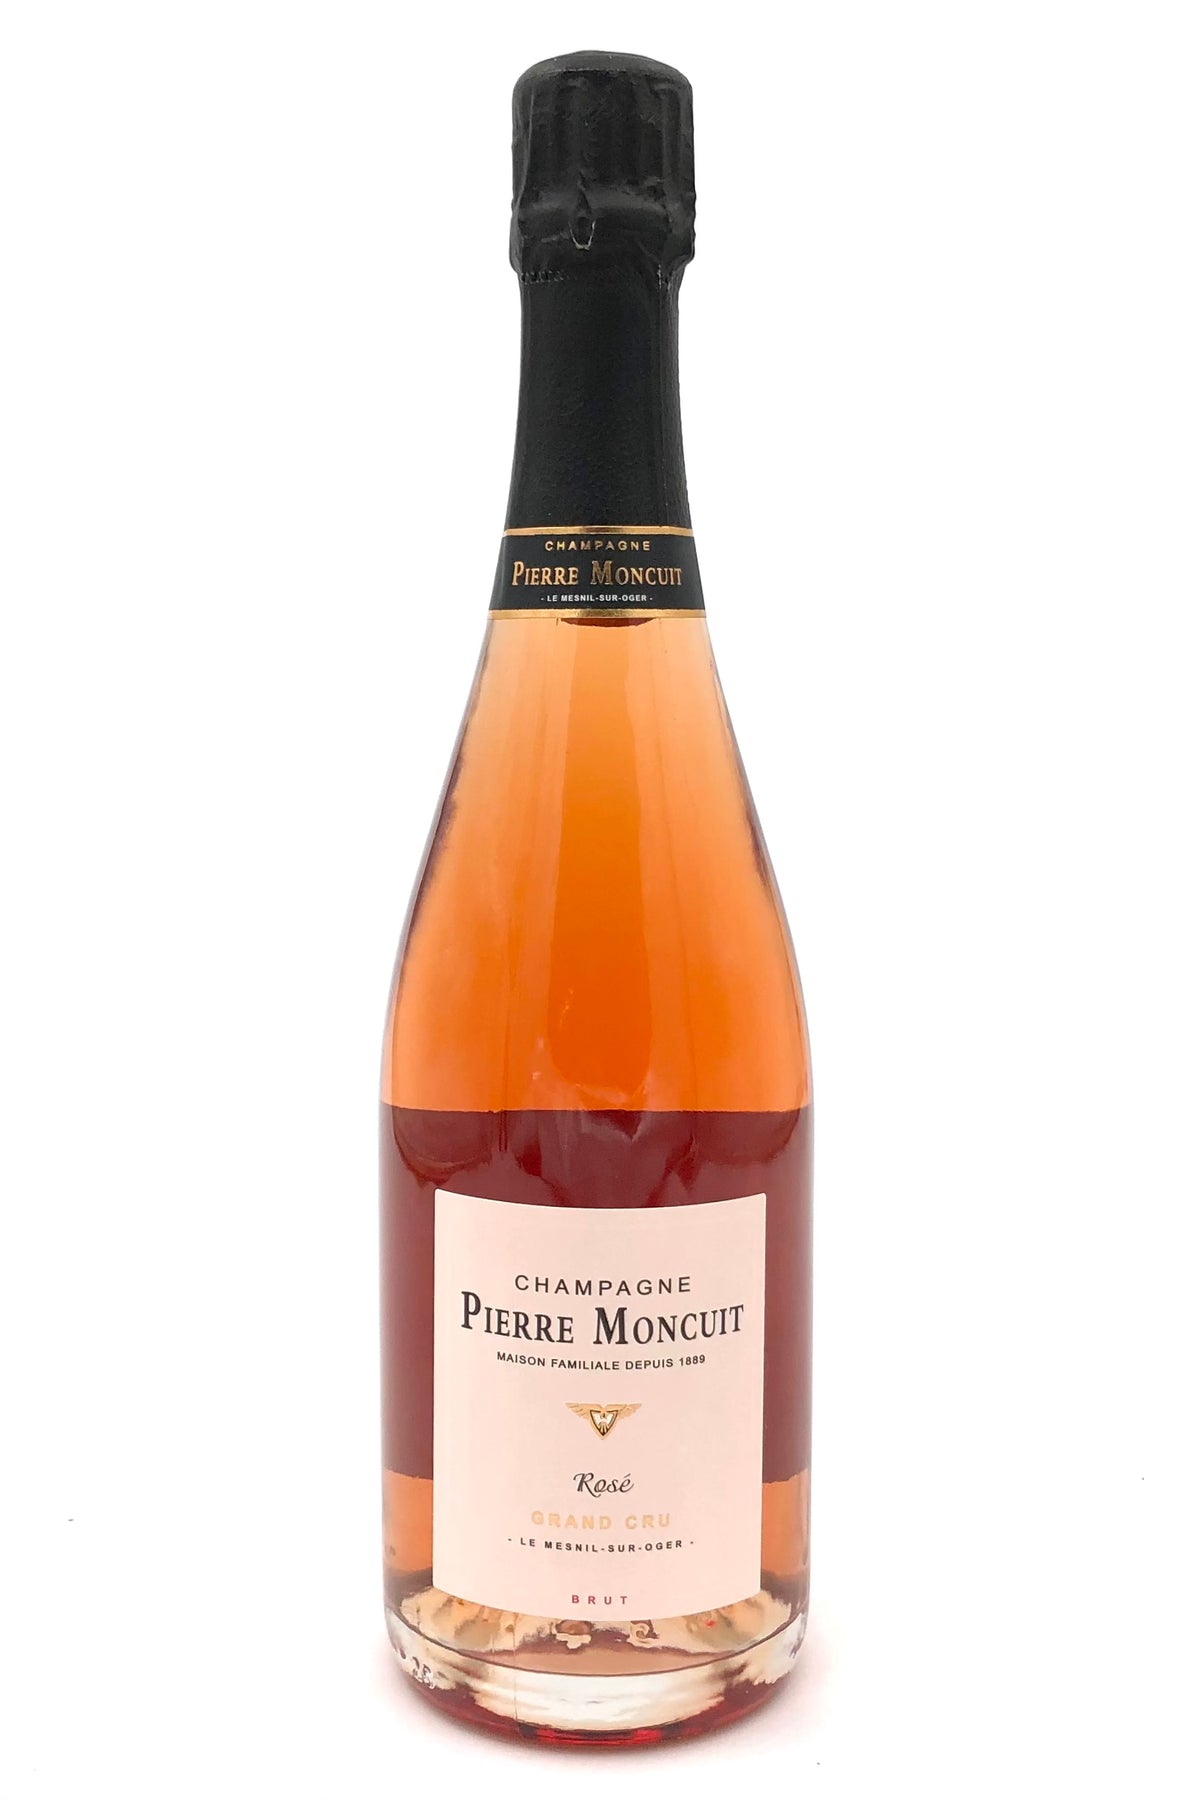 Pierre Moncuit Rosé Brut Champagne Grand Cru